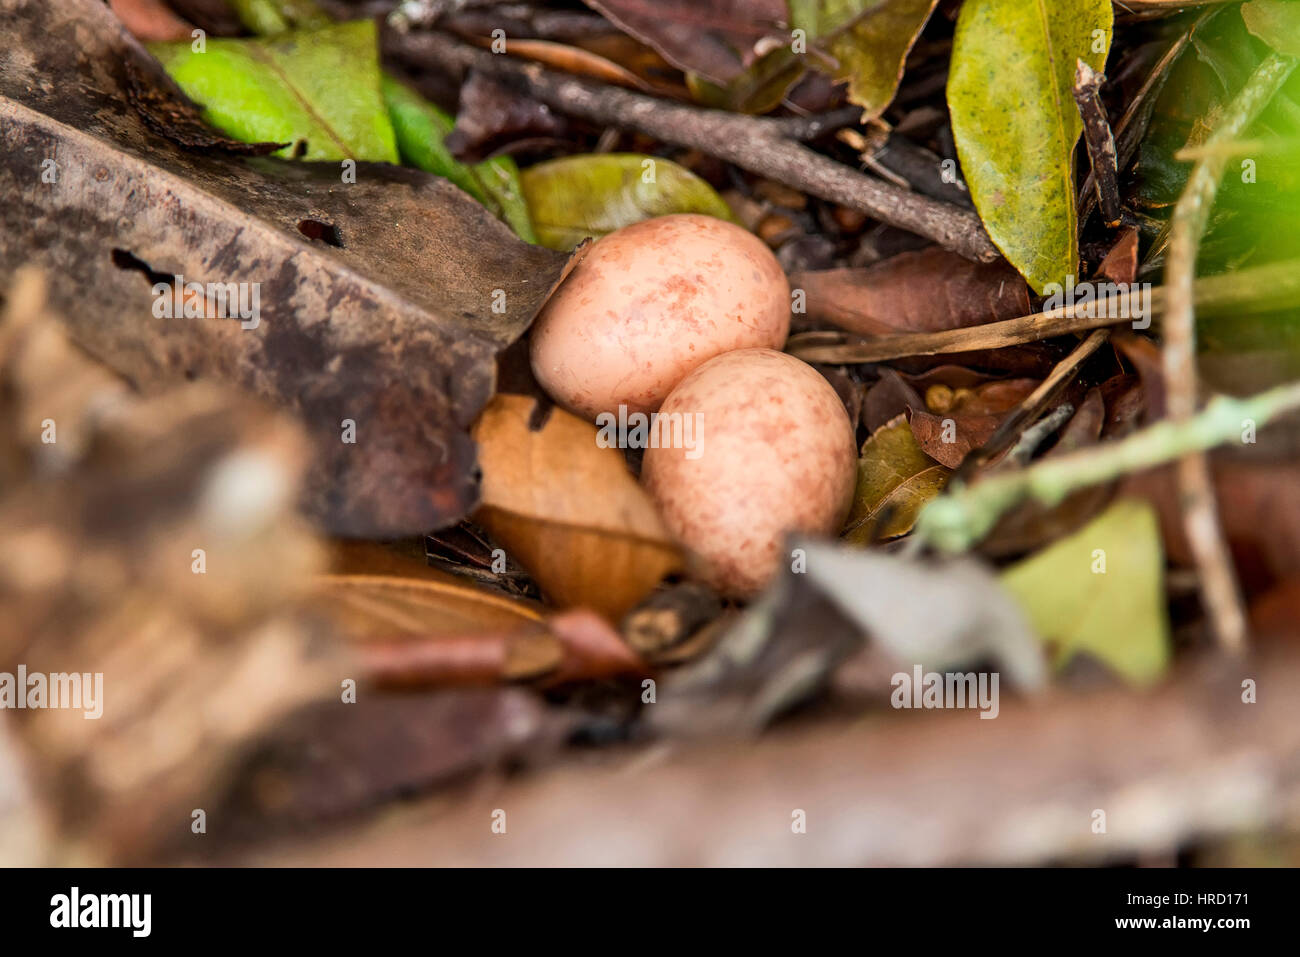 Engoulevent pauraqué (Hydropsalis albicollis) oeufs, photographié à Guarapari, Espírito Santo - sud-est du Brésil. Biome de la forêt atlantique. Banque D'Images